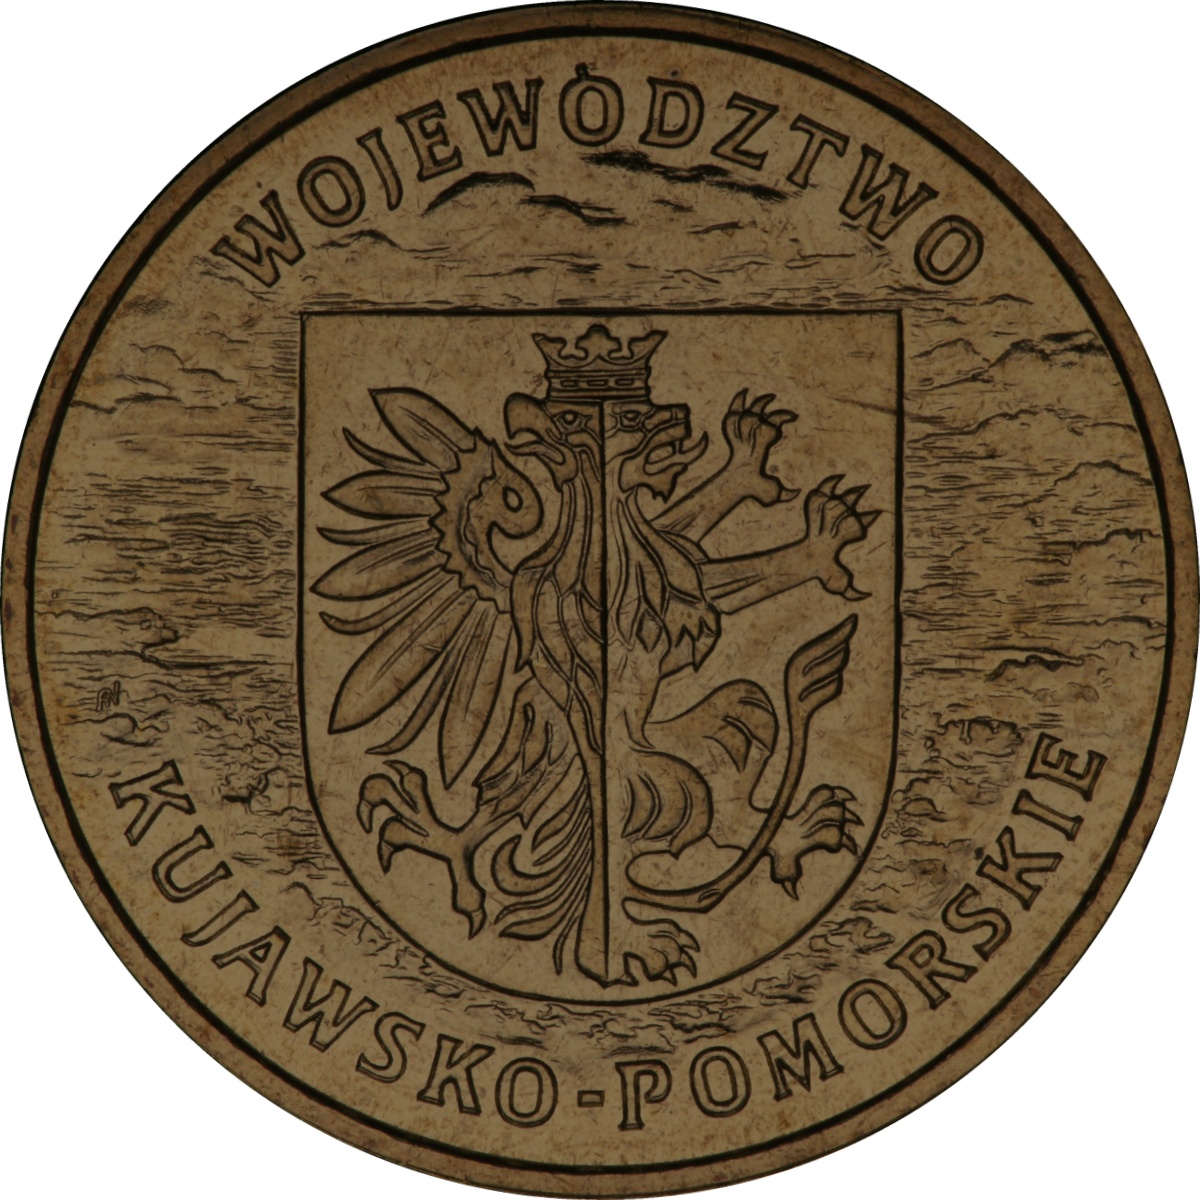 2zl-okolicznosciowe-wojewodztwo-kujawsko-pomorskie-rewers-monety